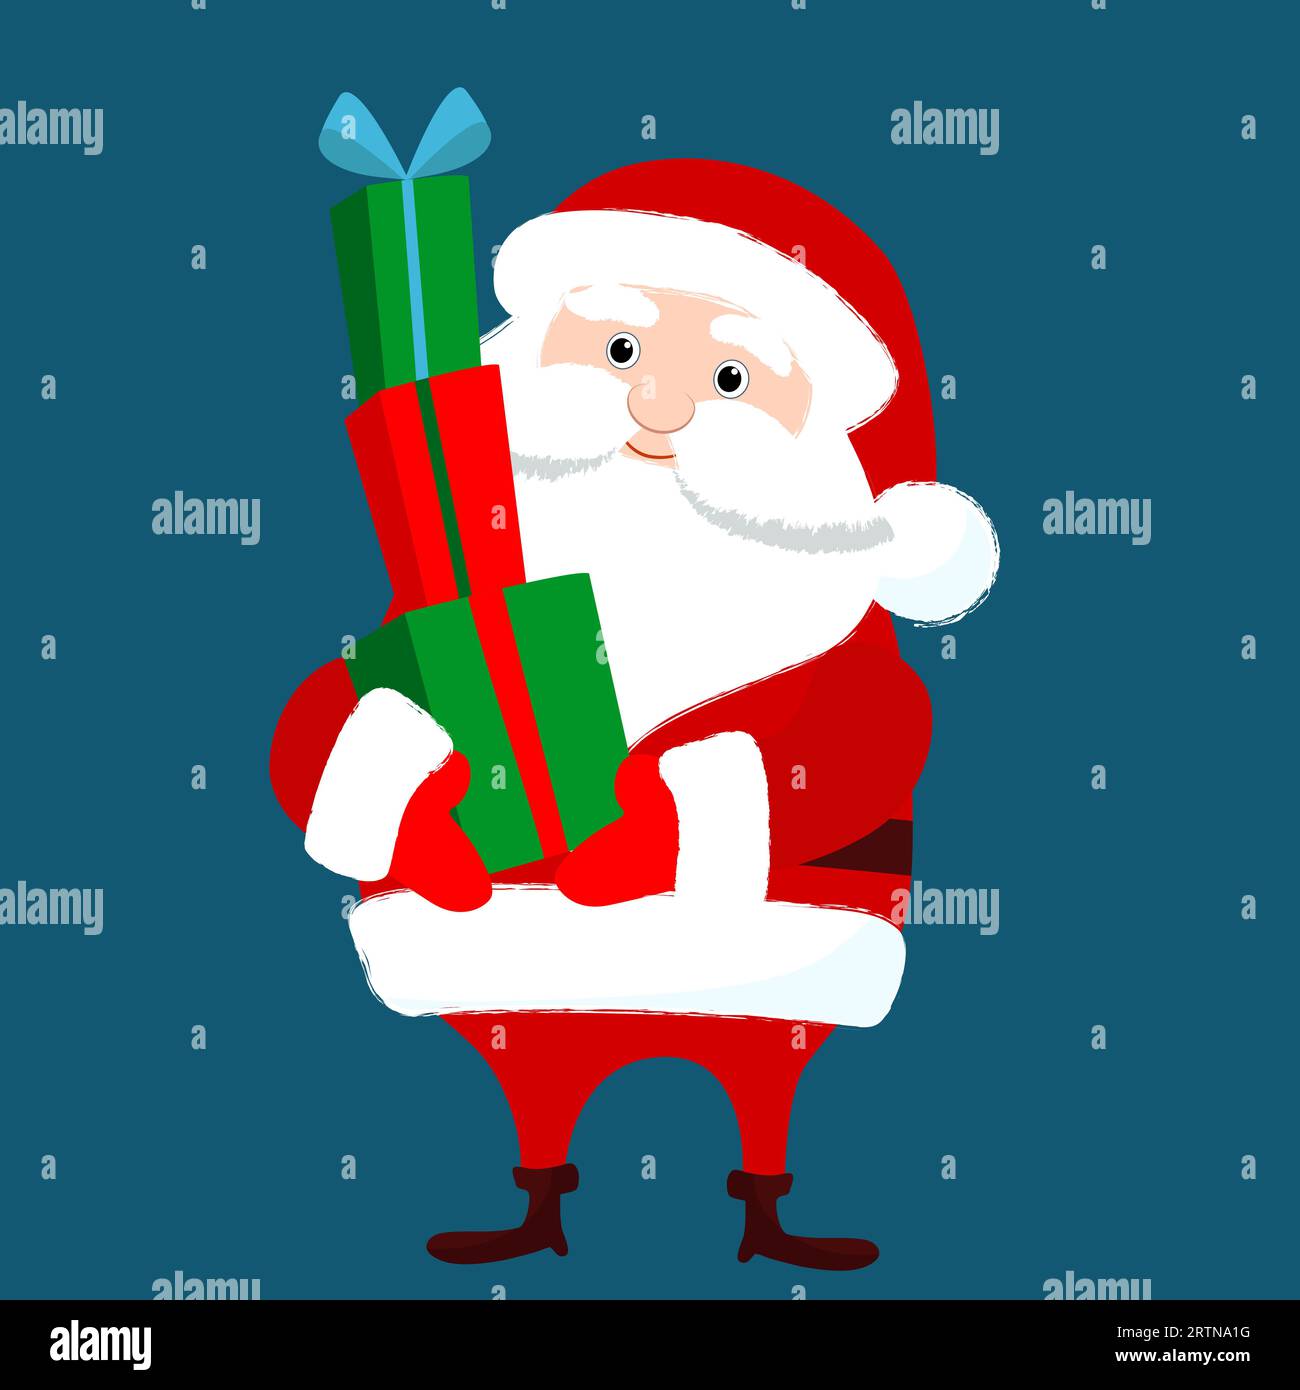 Der Weihnachtsmann hält viele Geschenke in seinen Händen vor sich. Witziges Charakterdesign für den Winter. Weihnachtsillustration im Zeichentrickstil. Stock Vektor